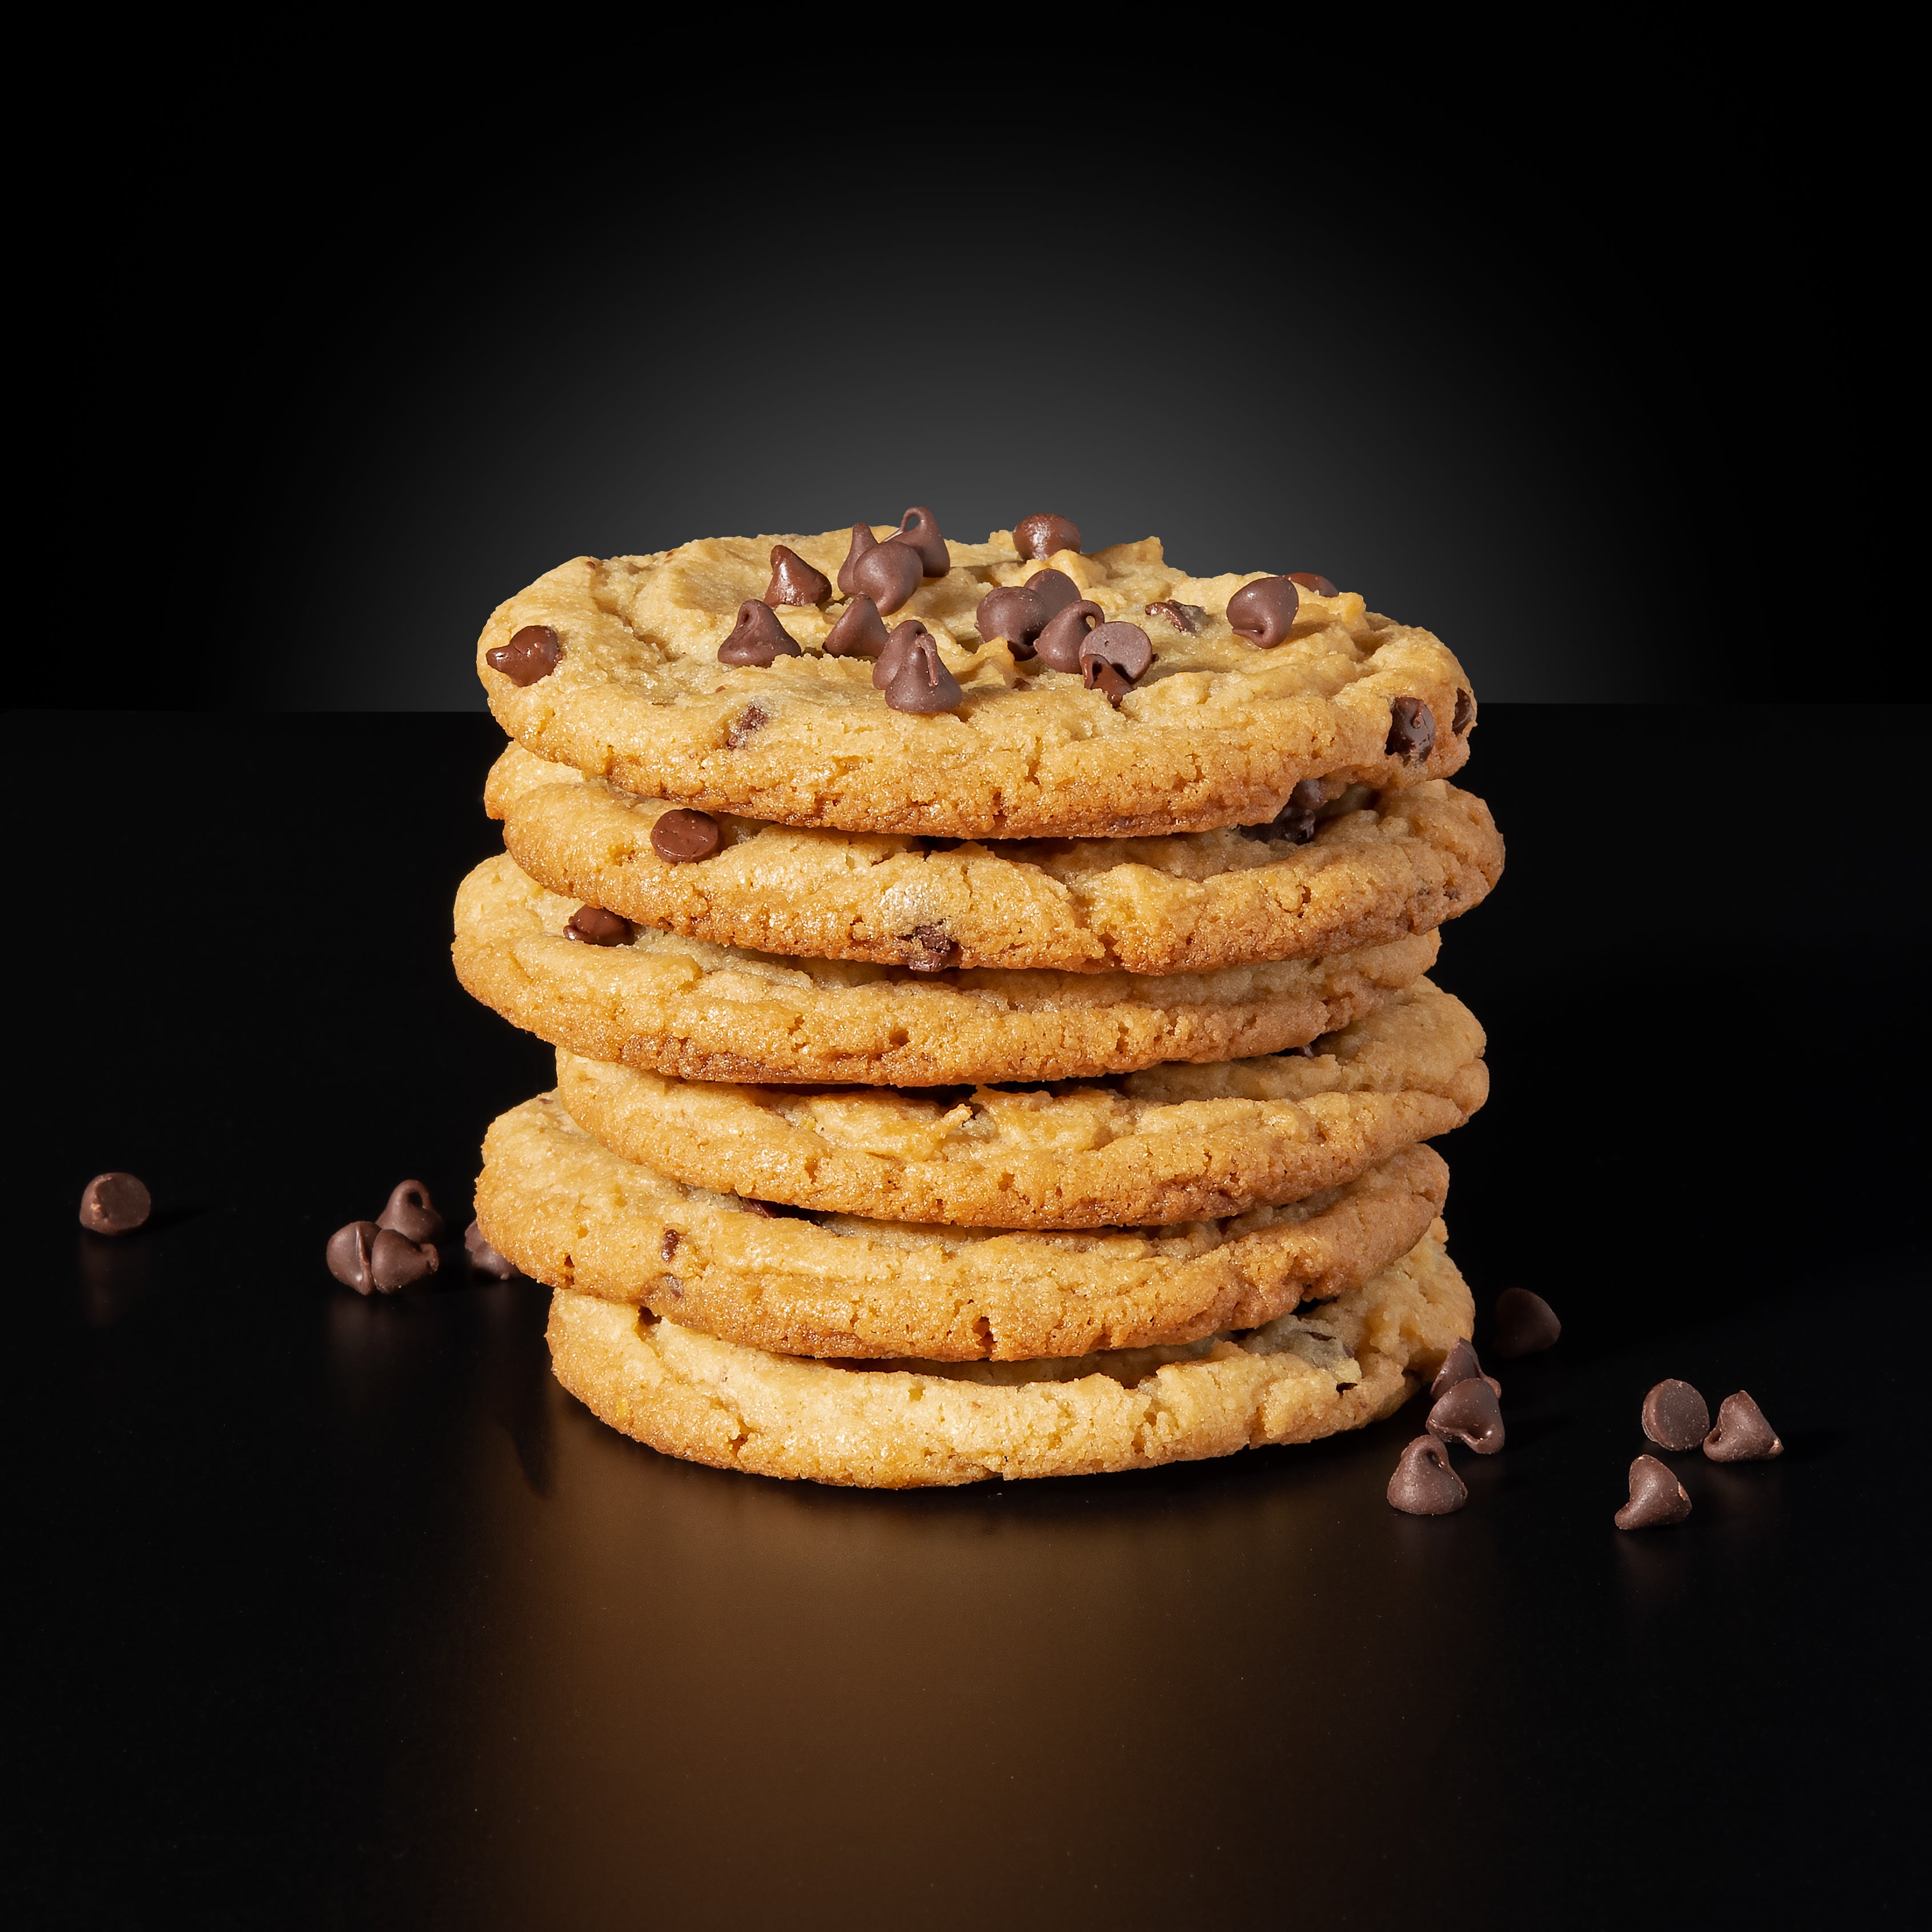 Cookie Dough Drops: Mixed Bag